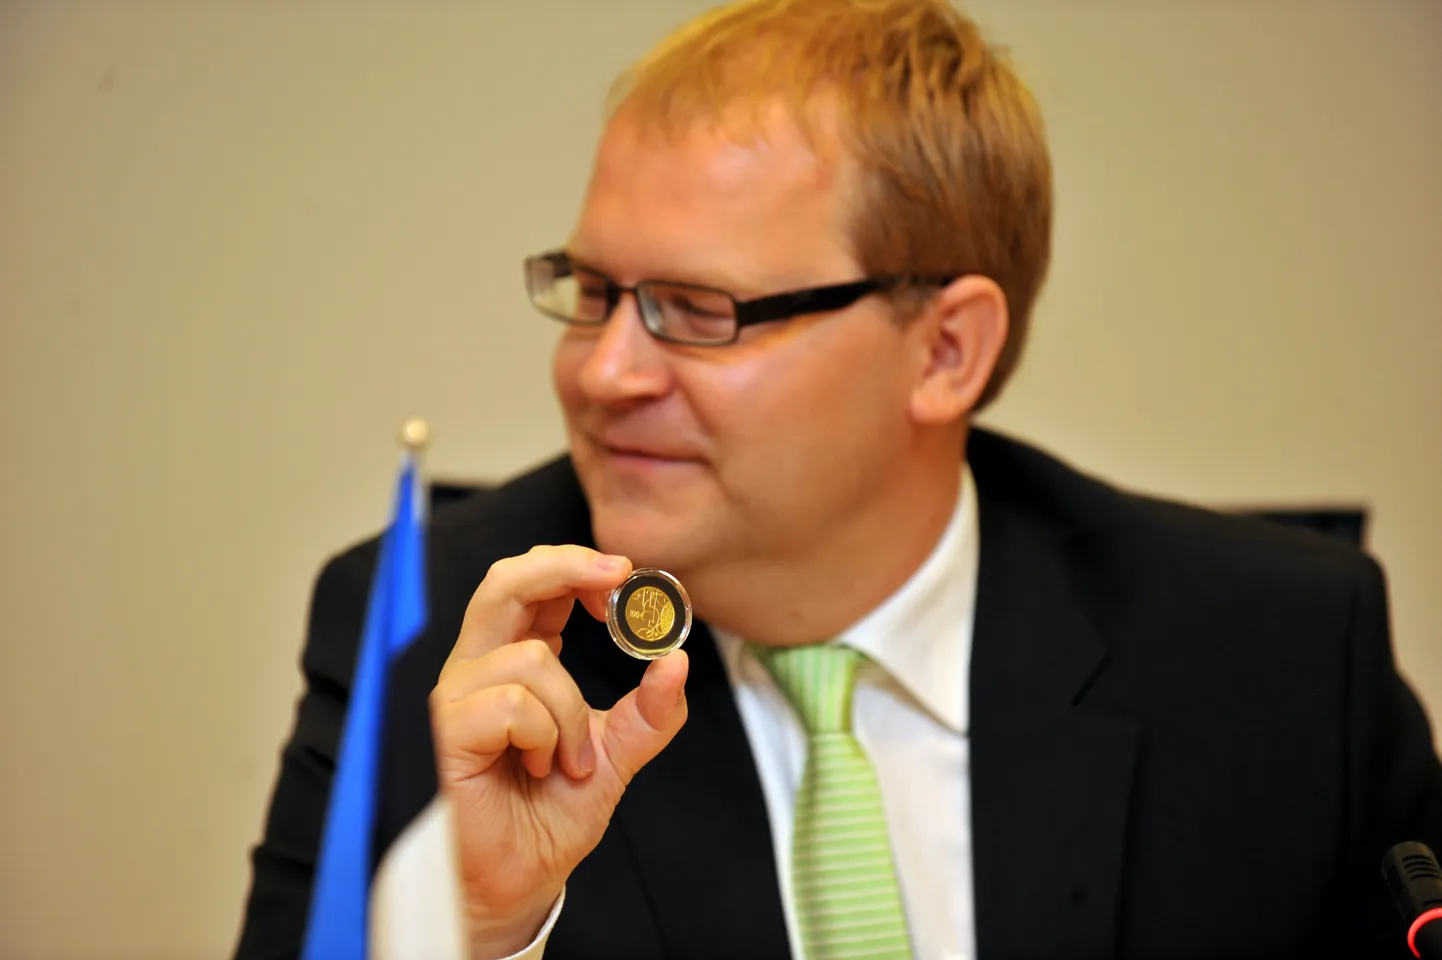 Soome välisminister Alexander Stubb kinkis oma Eesti kolleegile ehtsast kullast euromündi.